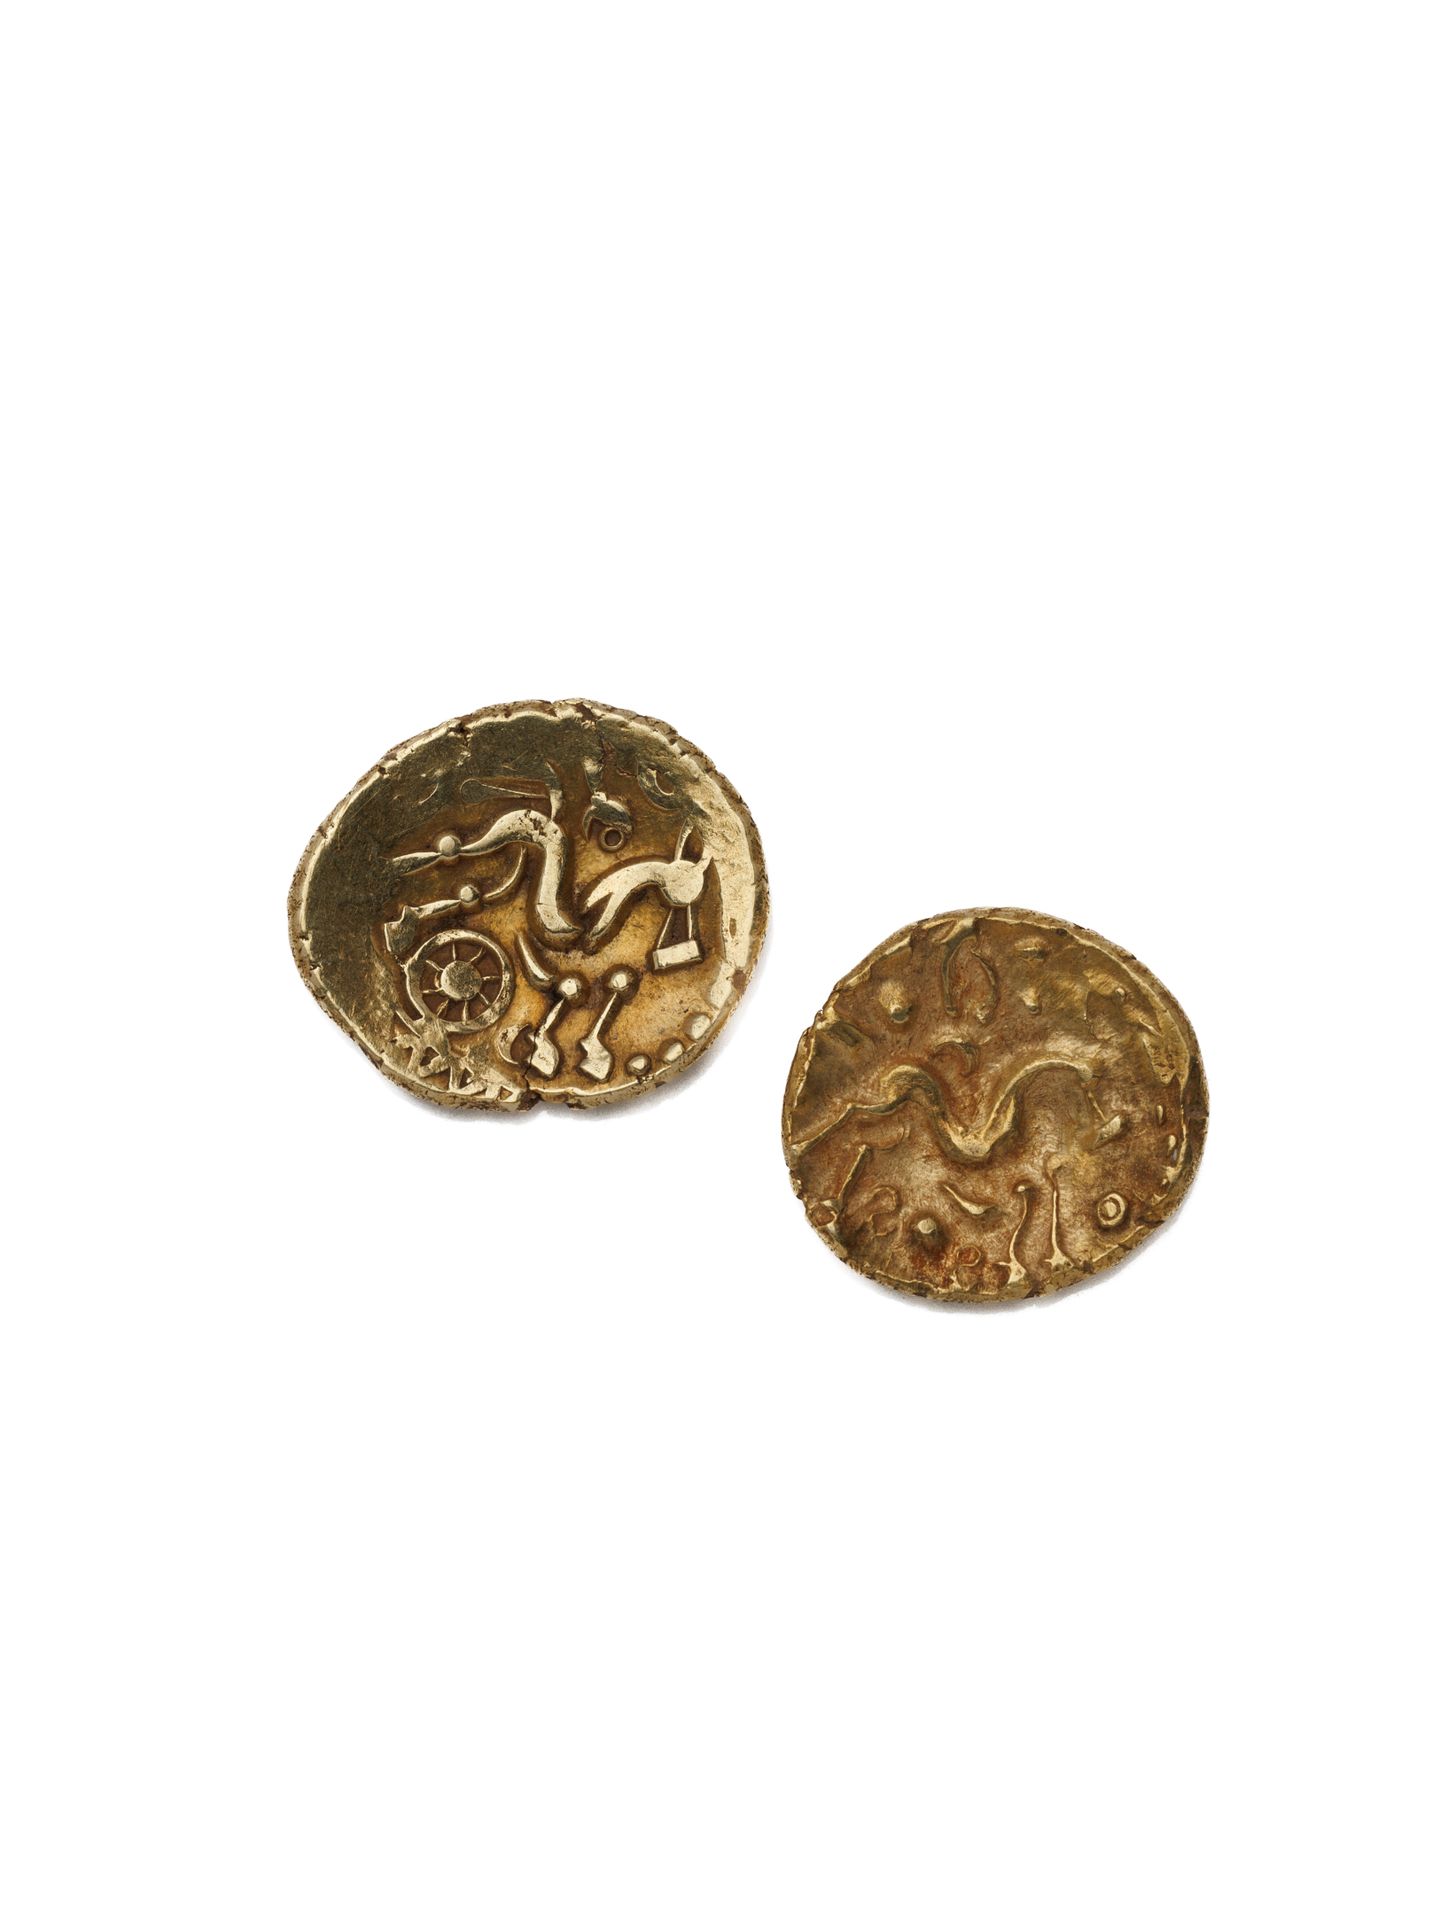 Null 2 monete d'oro della Gallia
Suessiones (regione di Soissons) statere con oc&hellip;